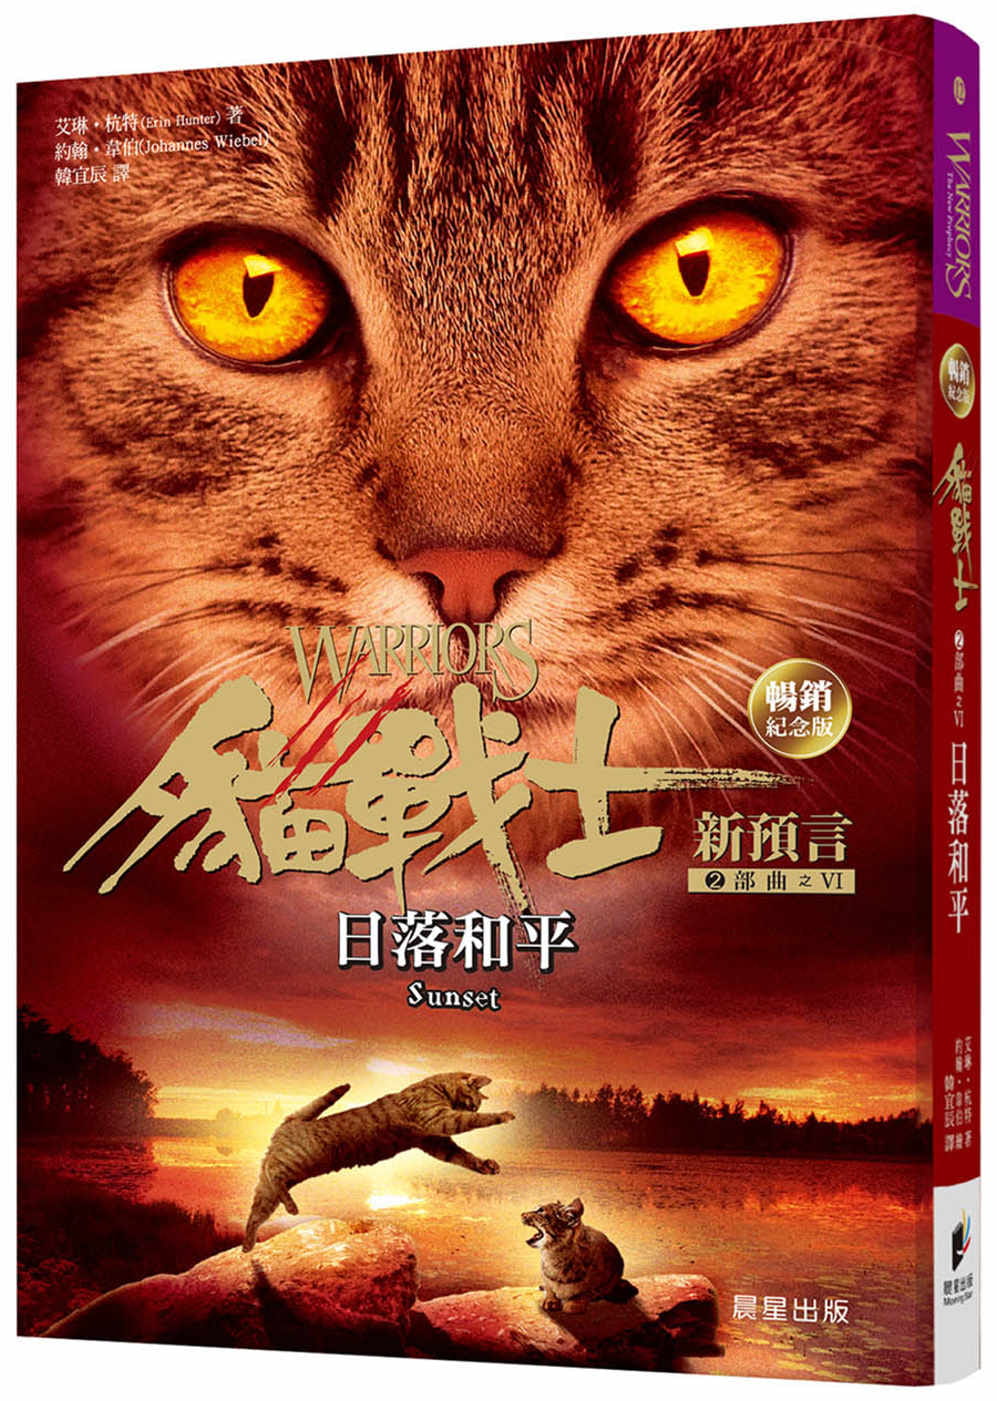 貓戰士暢銷紀念版-二部曲新預言之六-日落和平